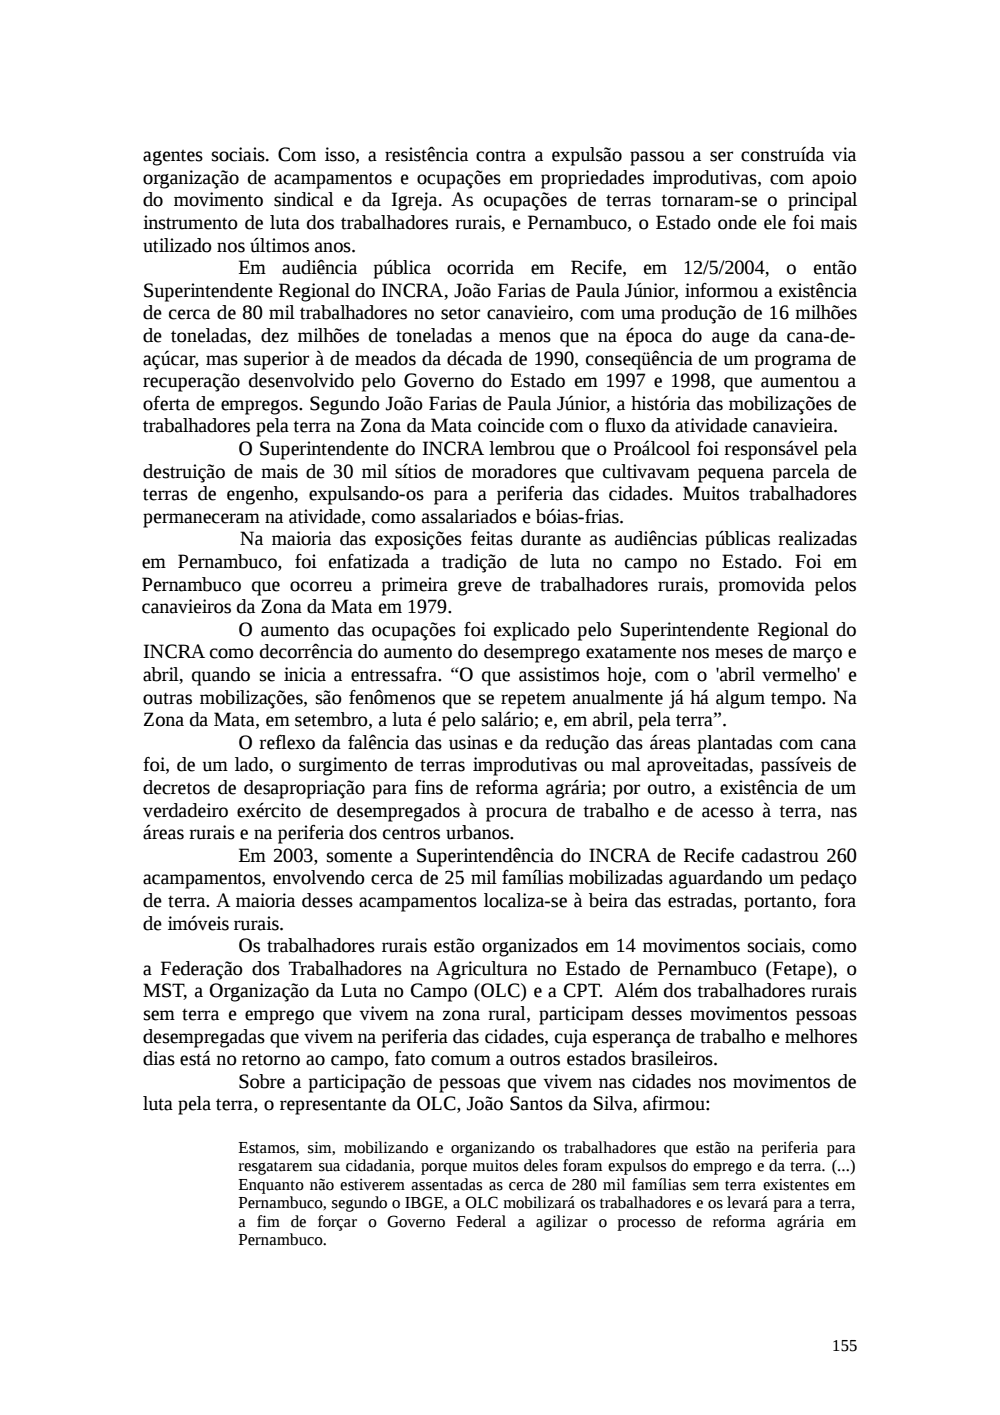 Page 155 from Relatório final da comissão